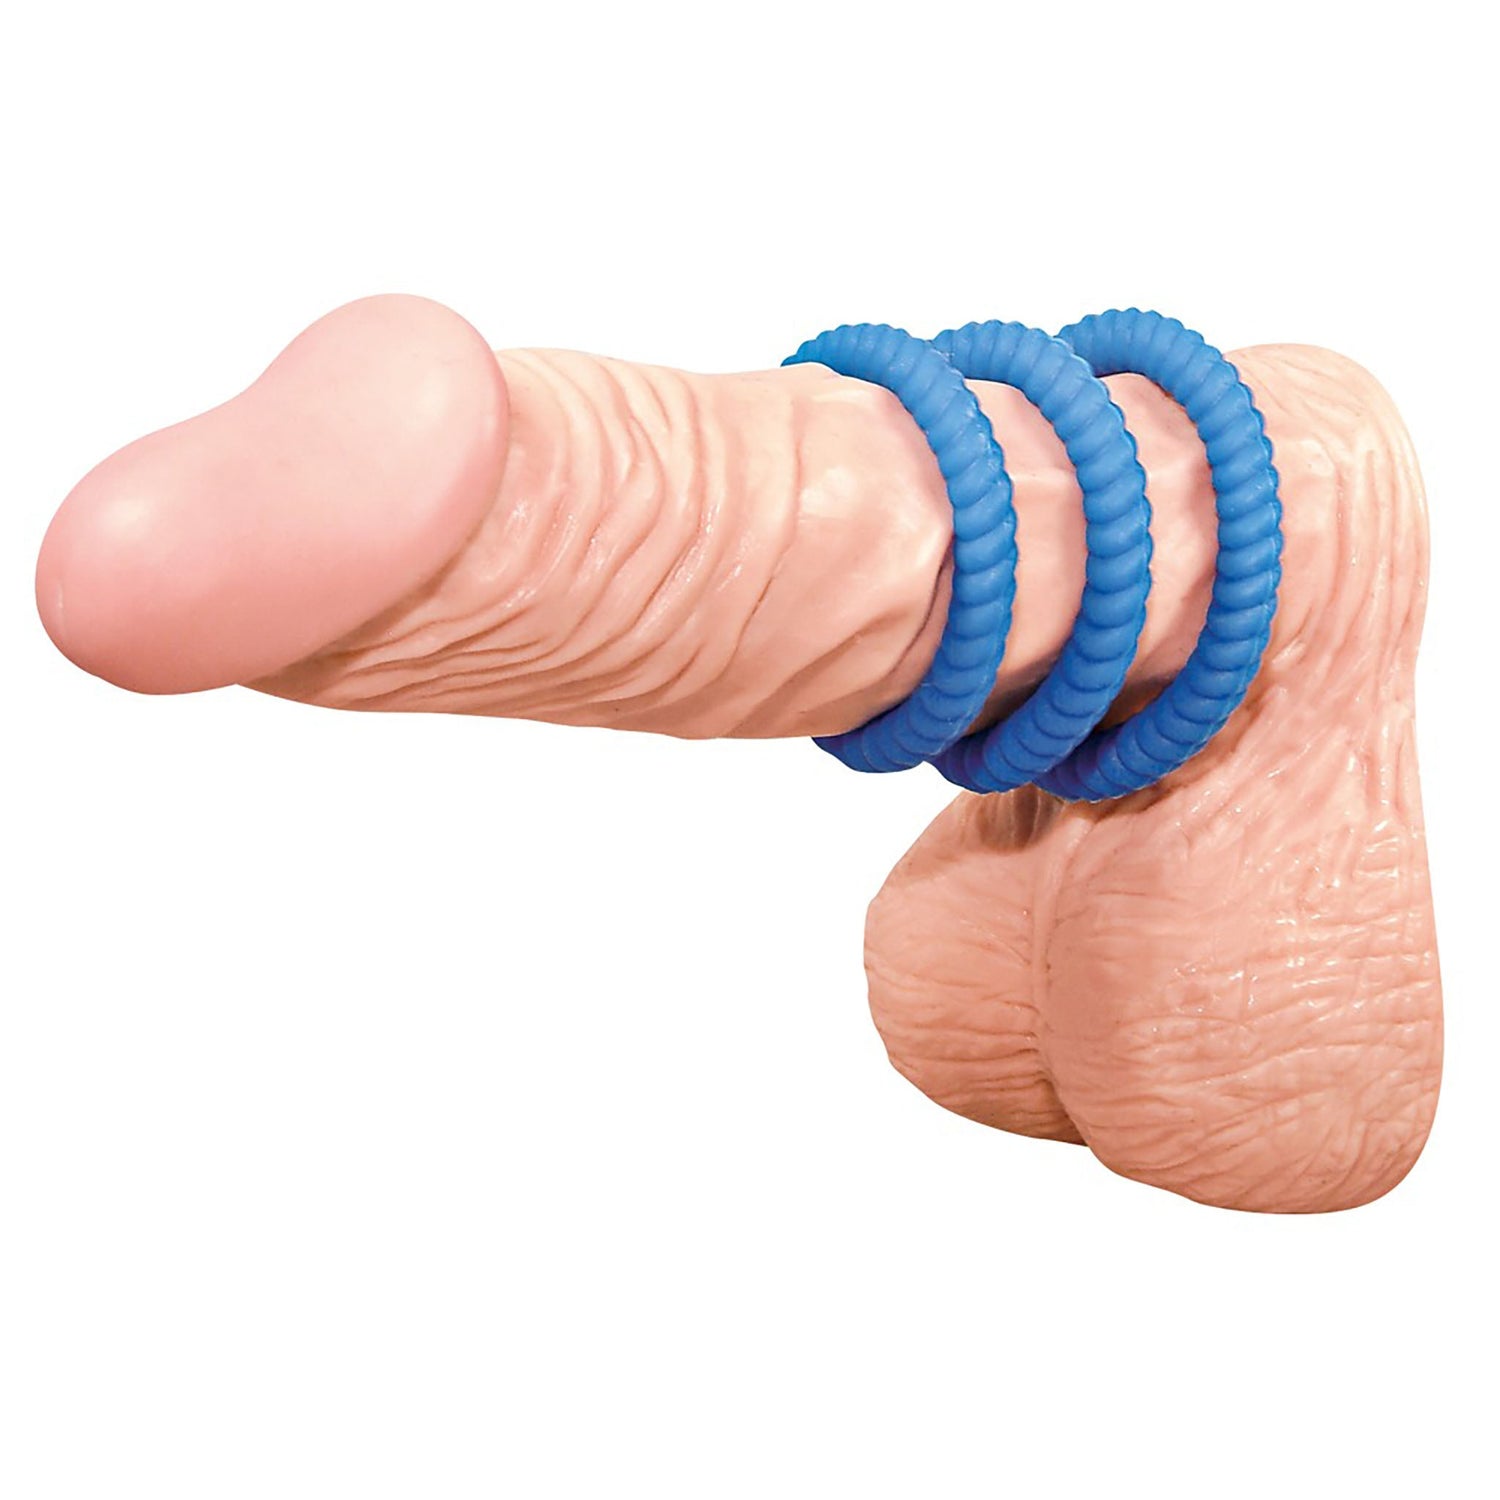 Lust 3 Penisringe, Penis ring set blau getragen